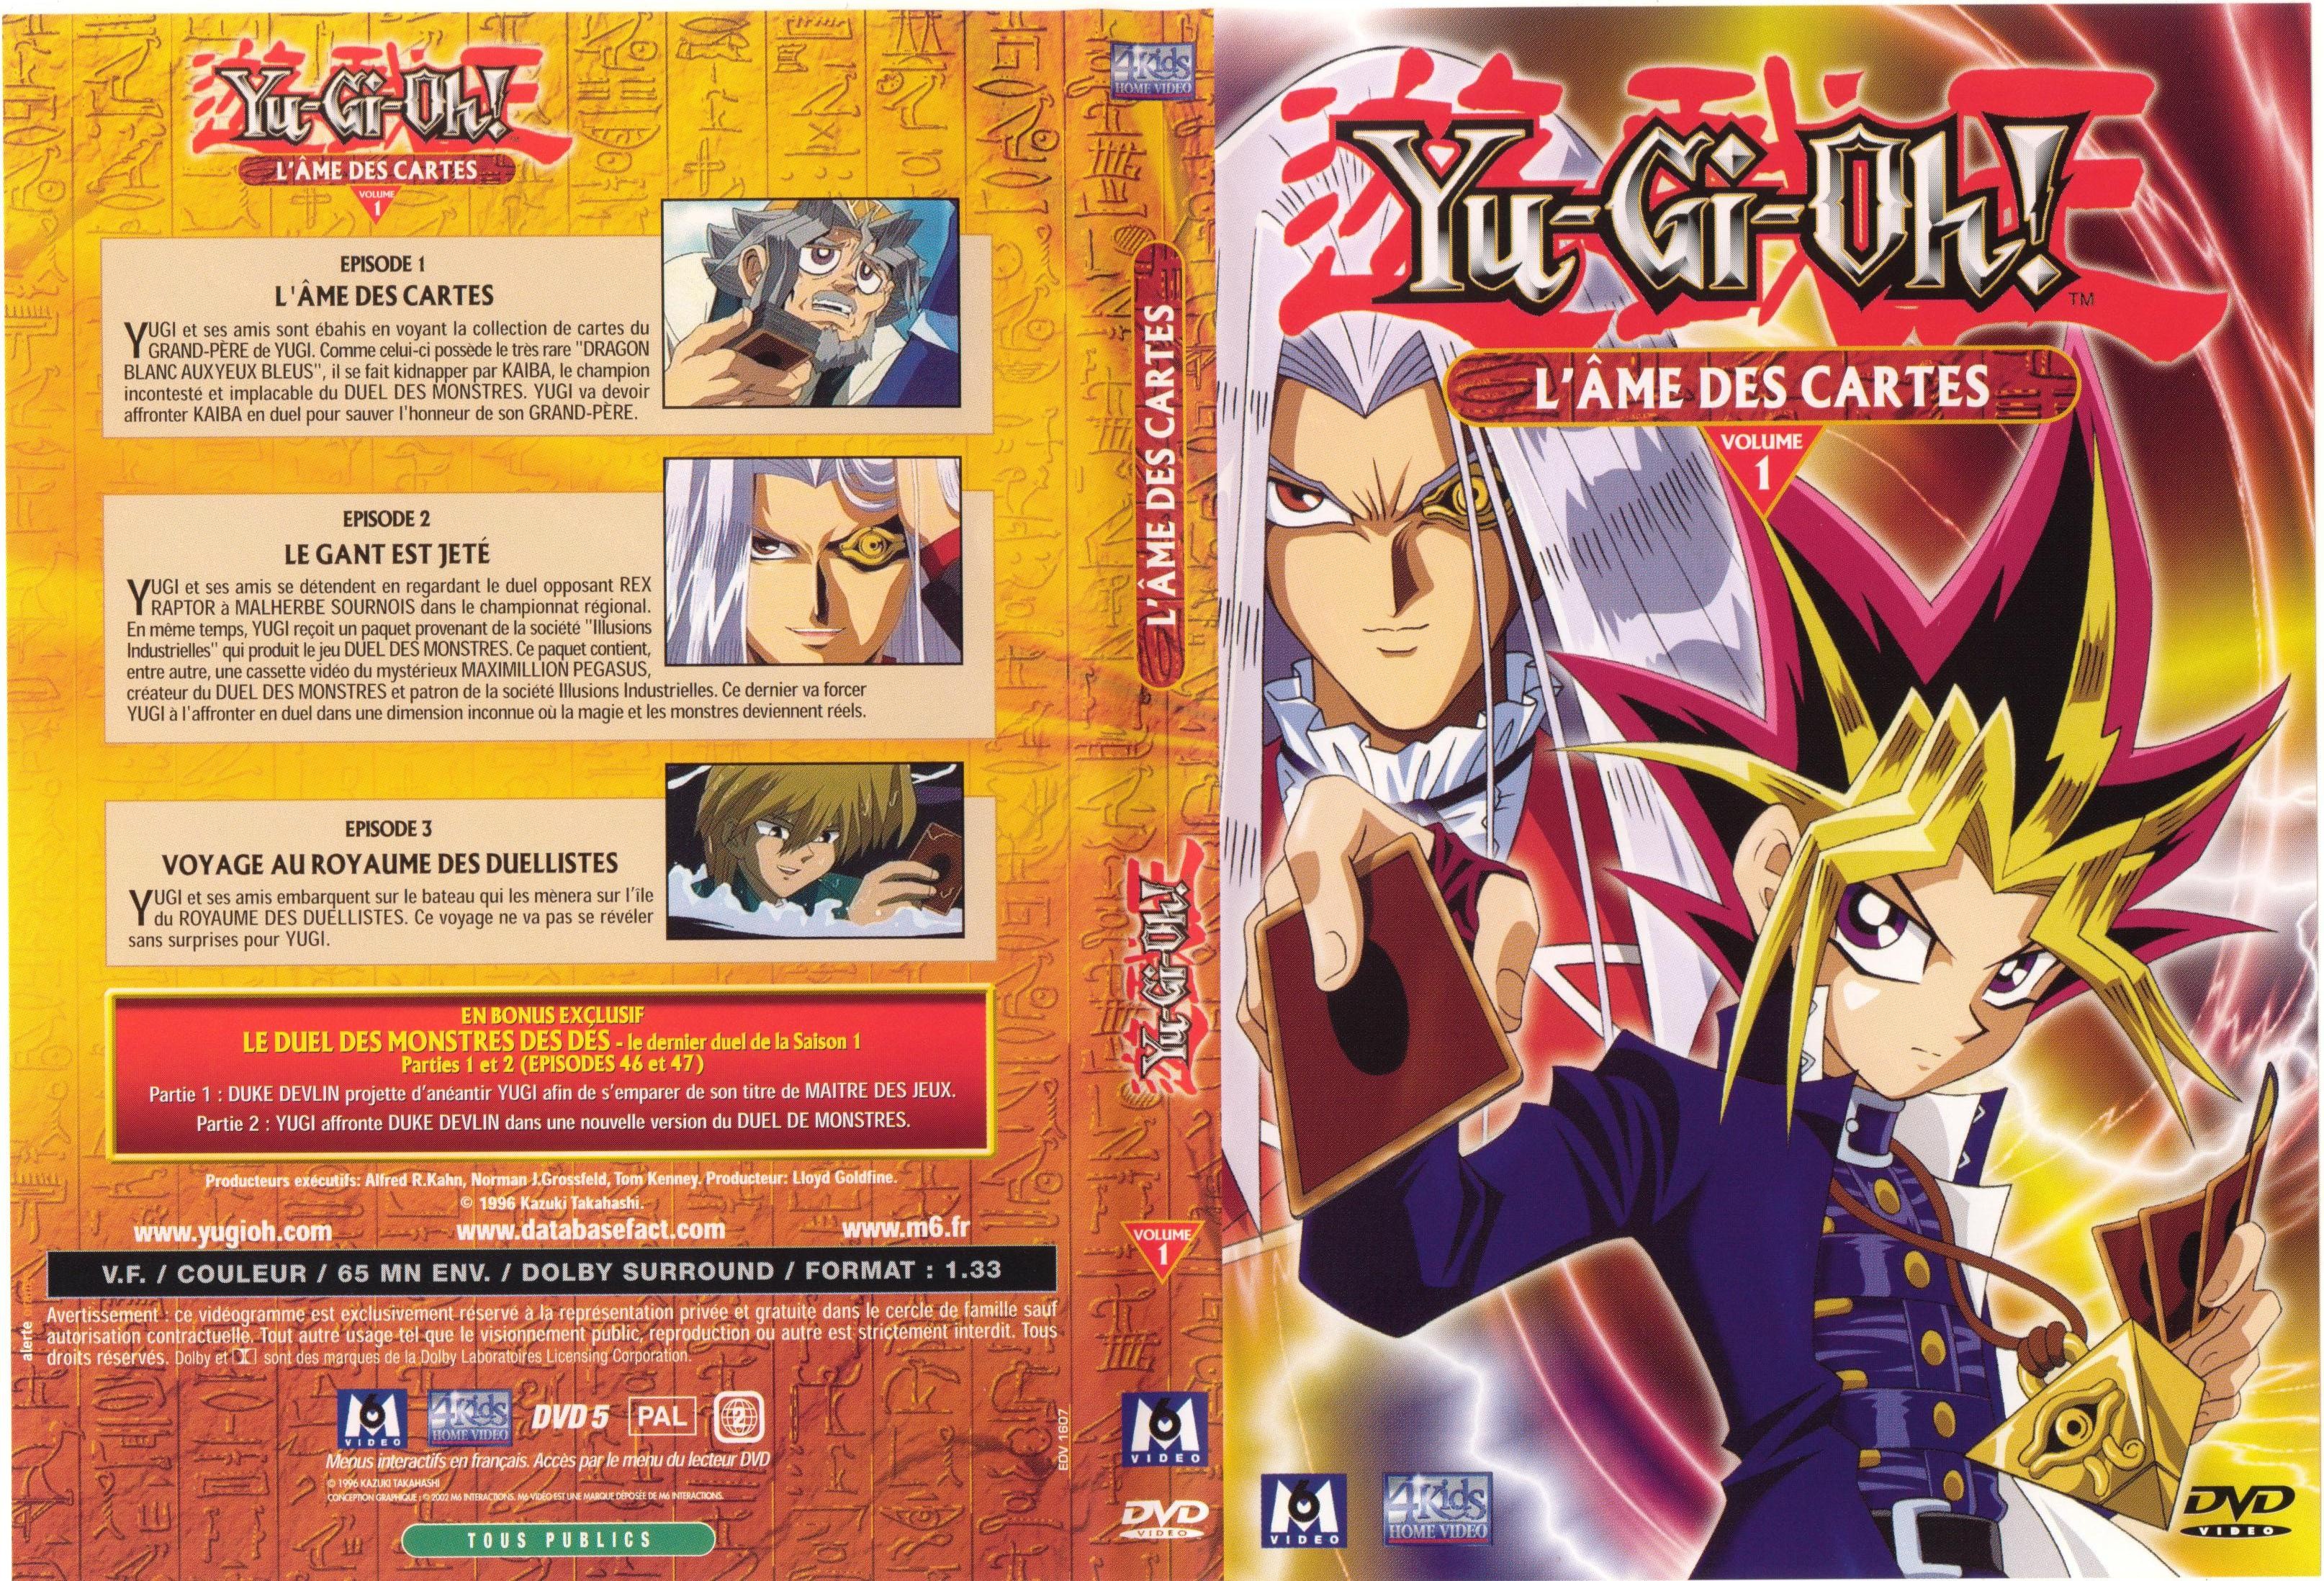 Jaquette DVD Yu-gi-oh! vol 01